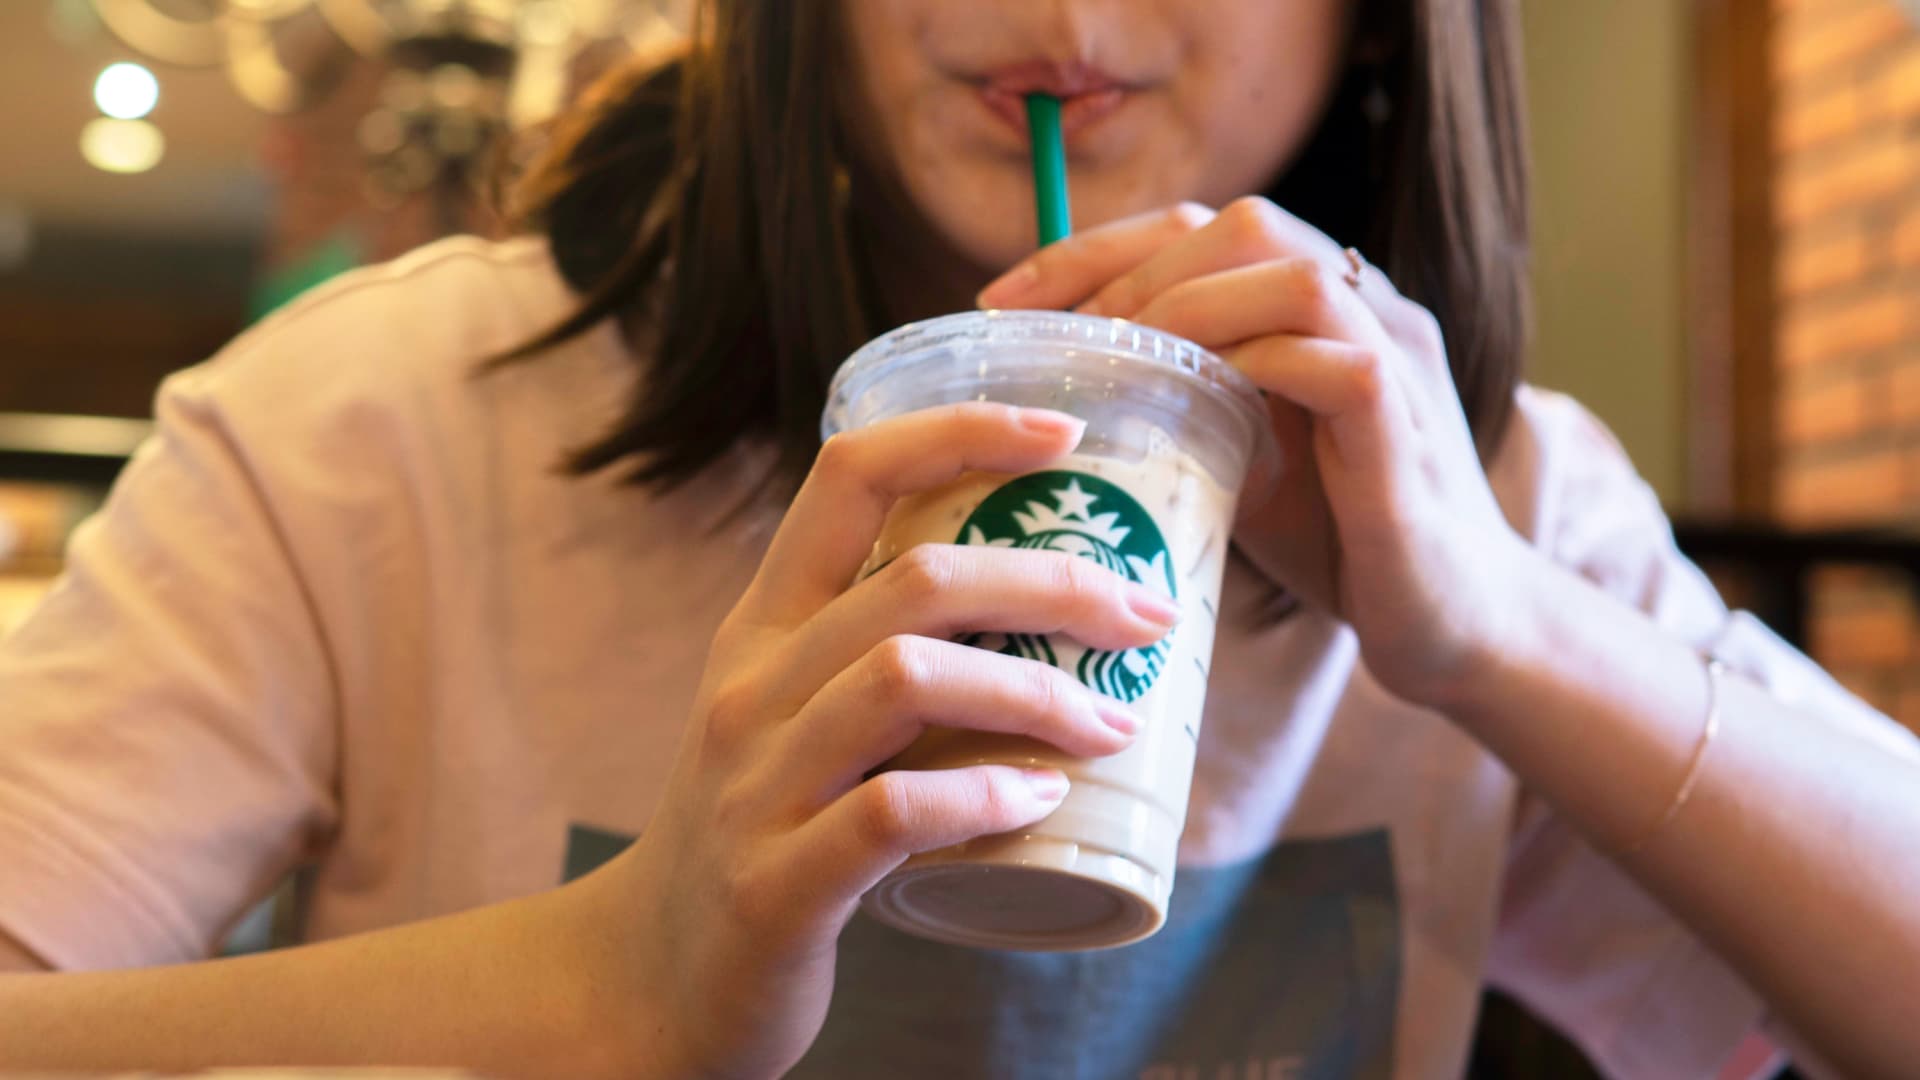 Bullish on Estee Lauder, Starbucks as China holds back earnings